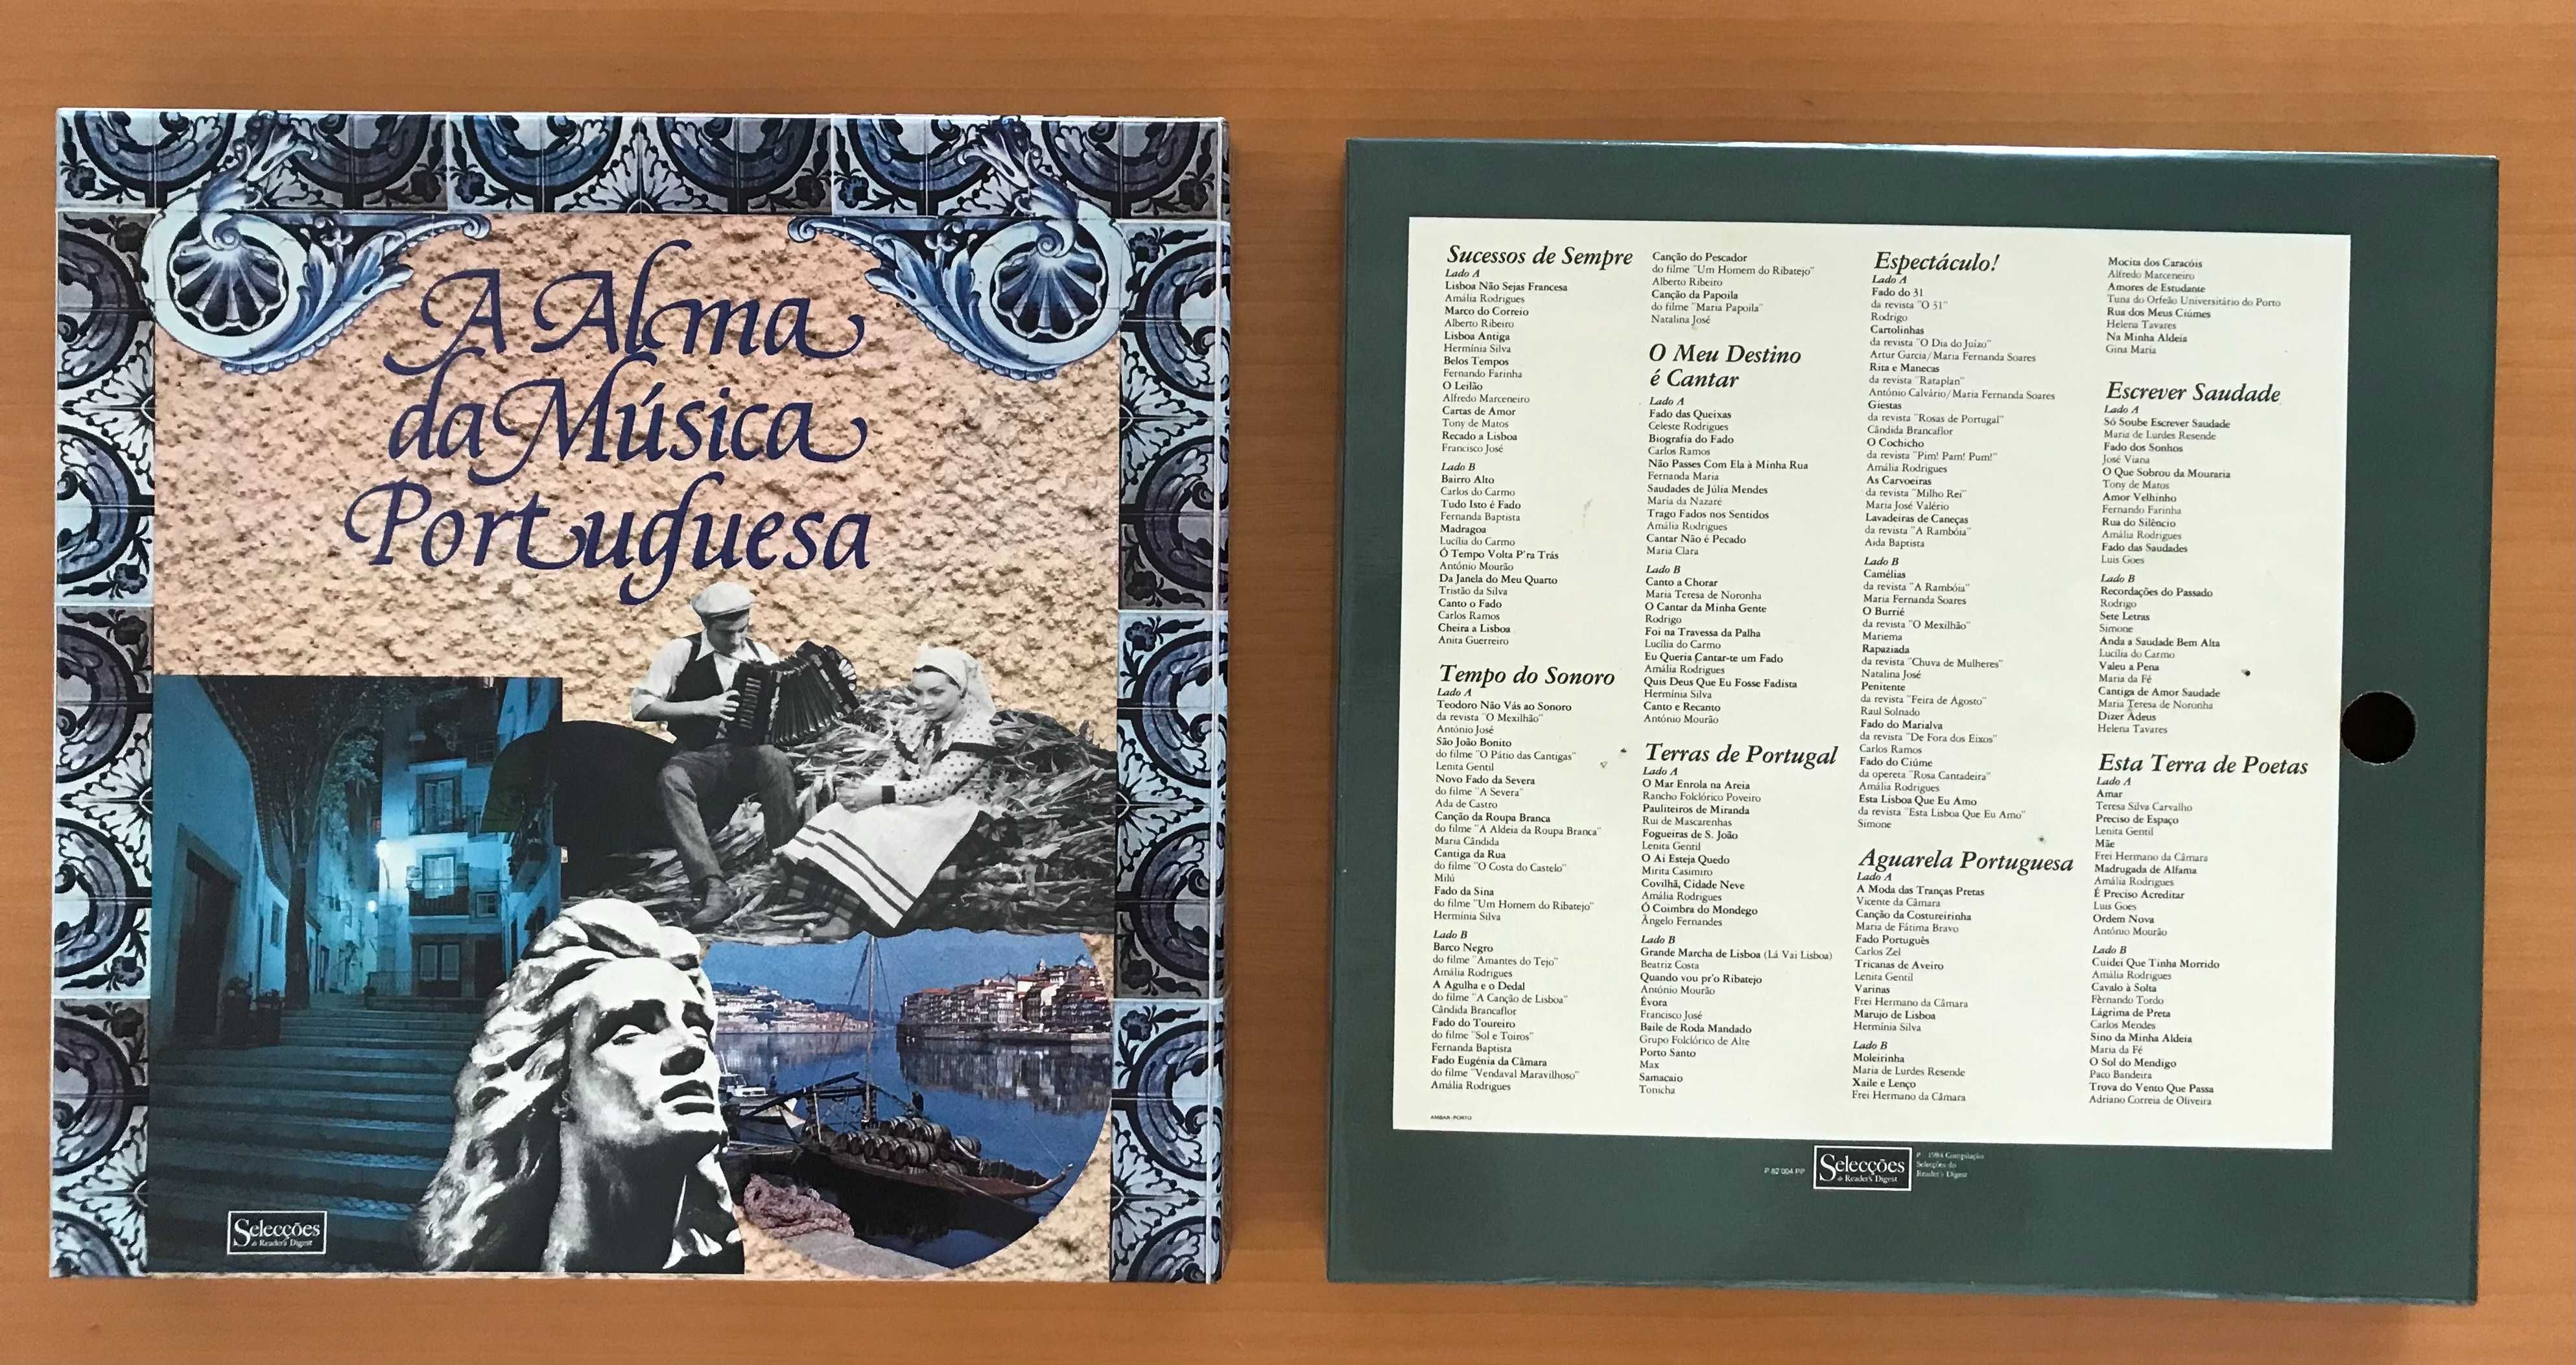 Coleção "A Alma da Música Portuguesa" 8 LPs vinil em excelente estado